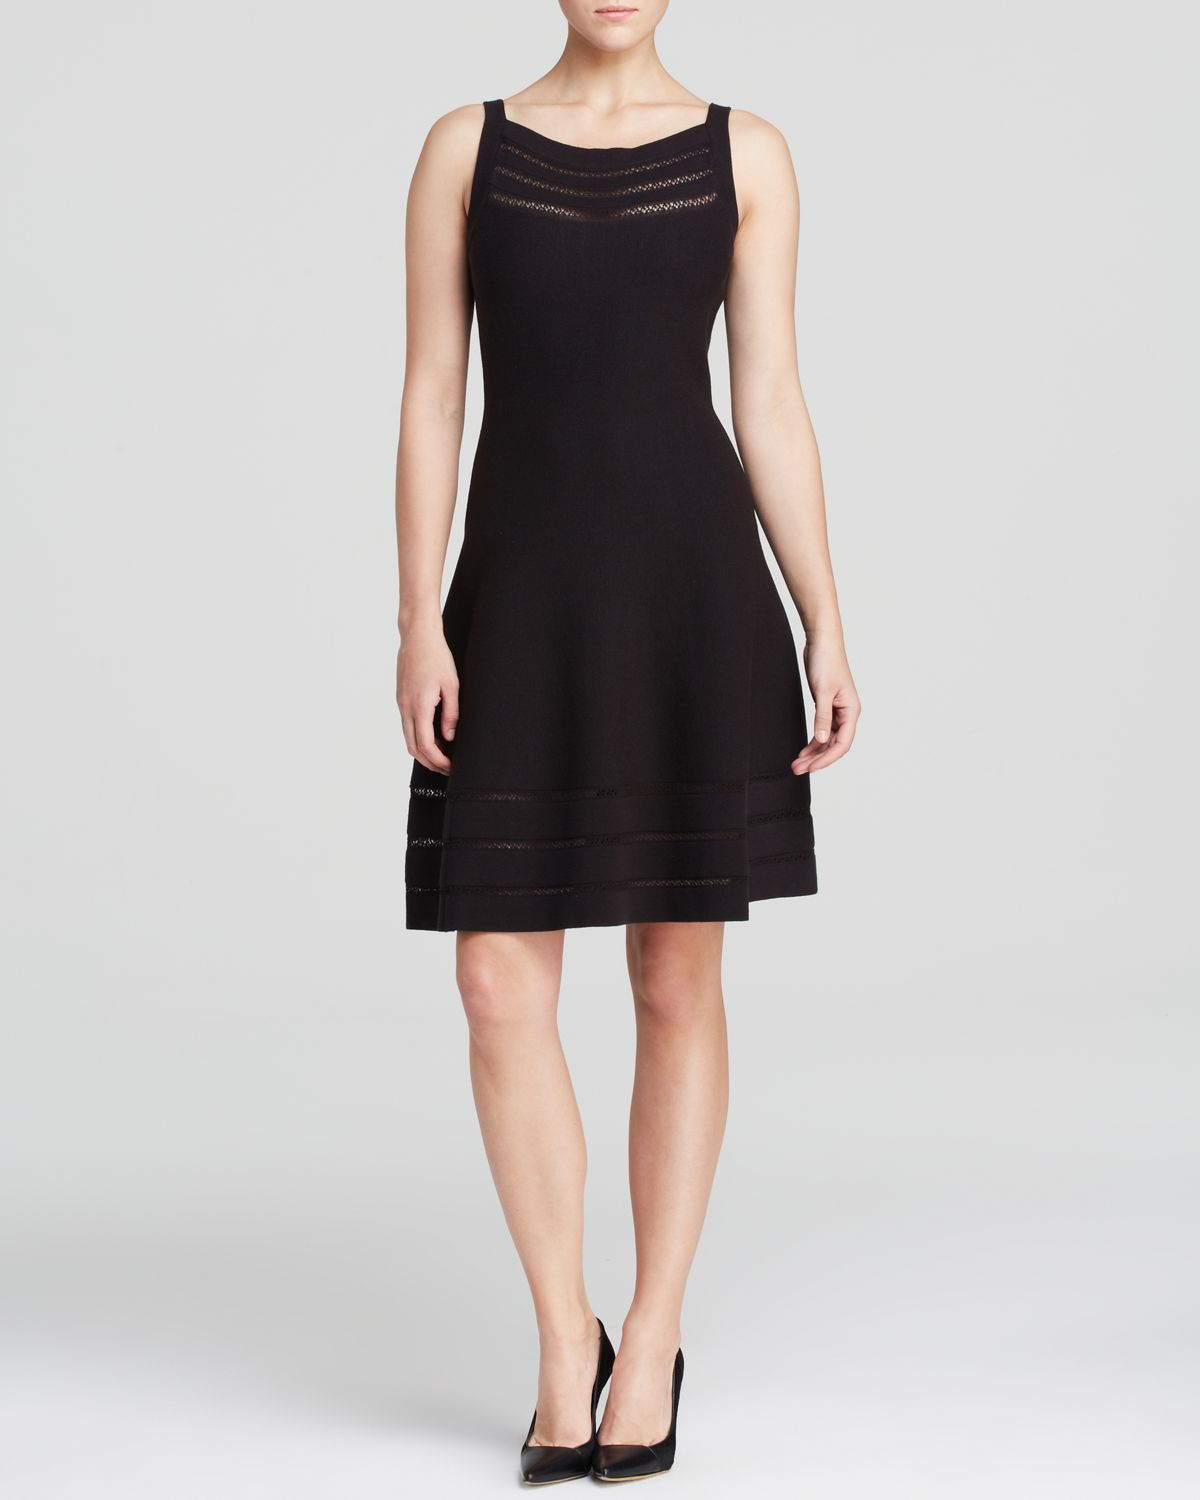 Kate Spade Open Stitch Knit Dress in Black | Lyst